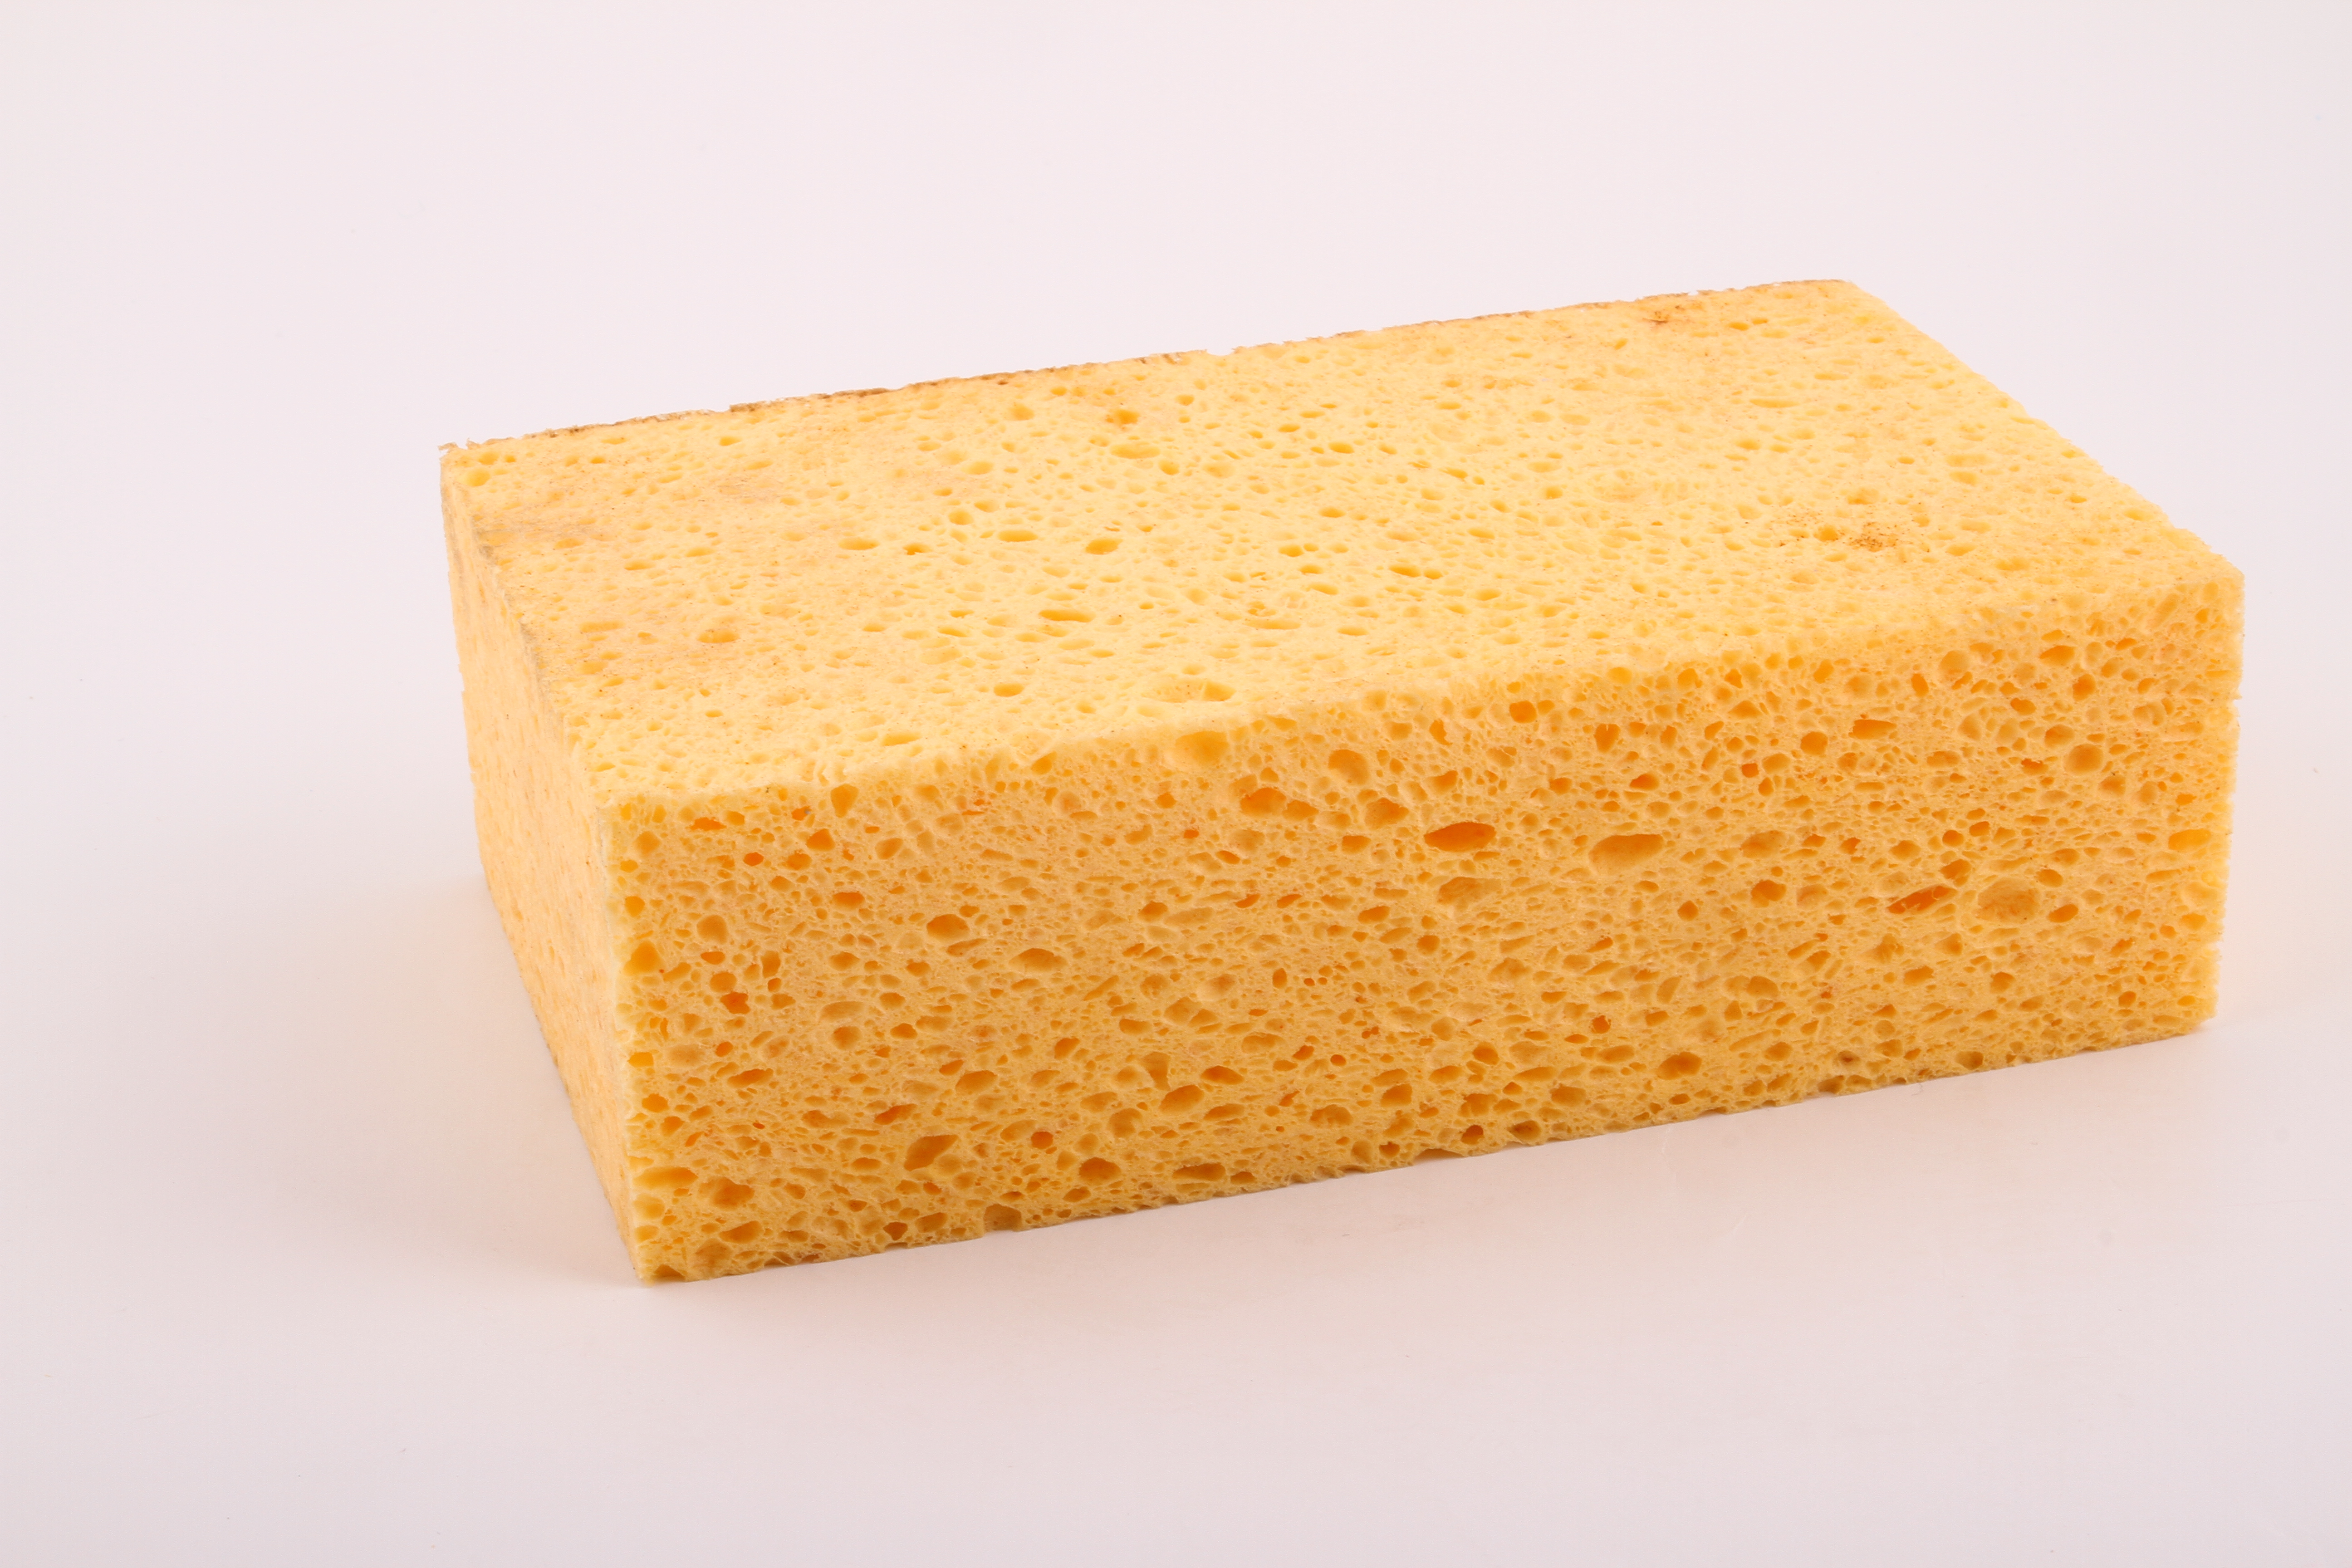 Car wash sponges